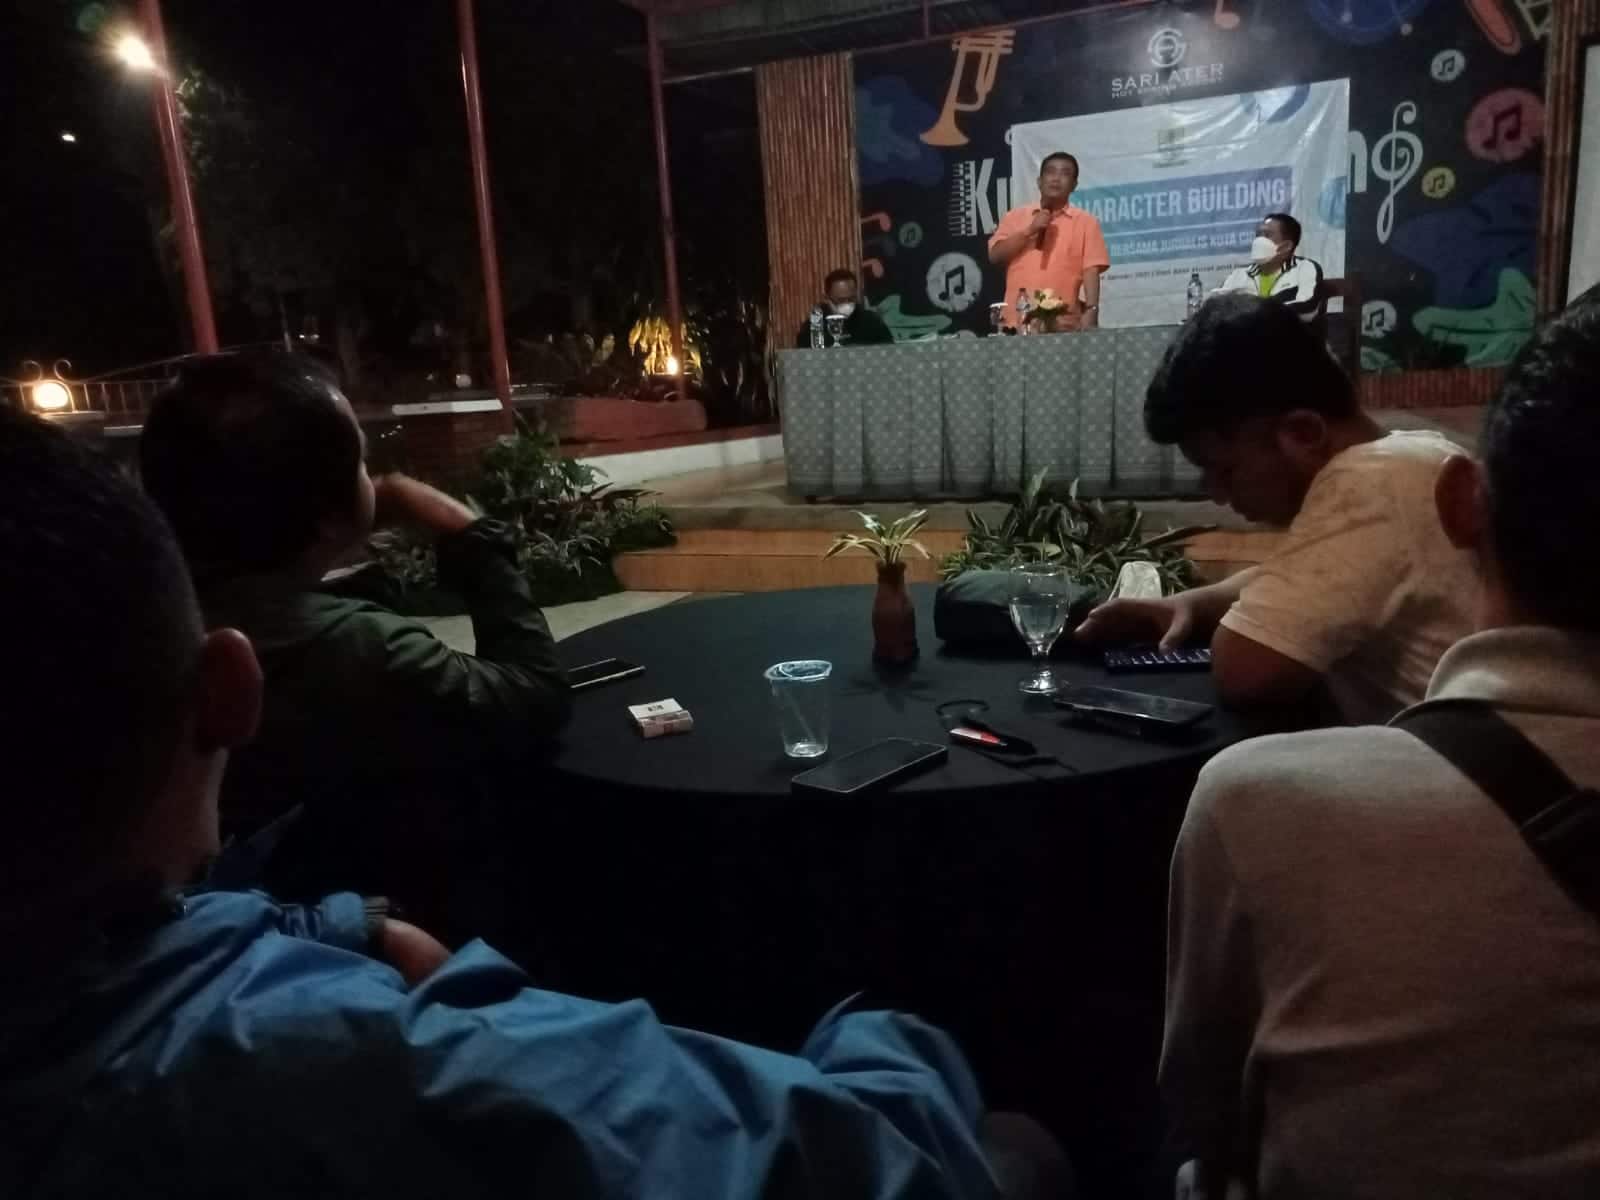 Pemerintah Kota Cirebon Pererat Silaturahmi dengan Jurnalis Melalui Character Building ‘Sehati’